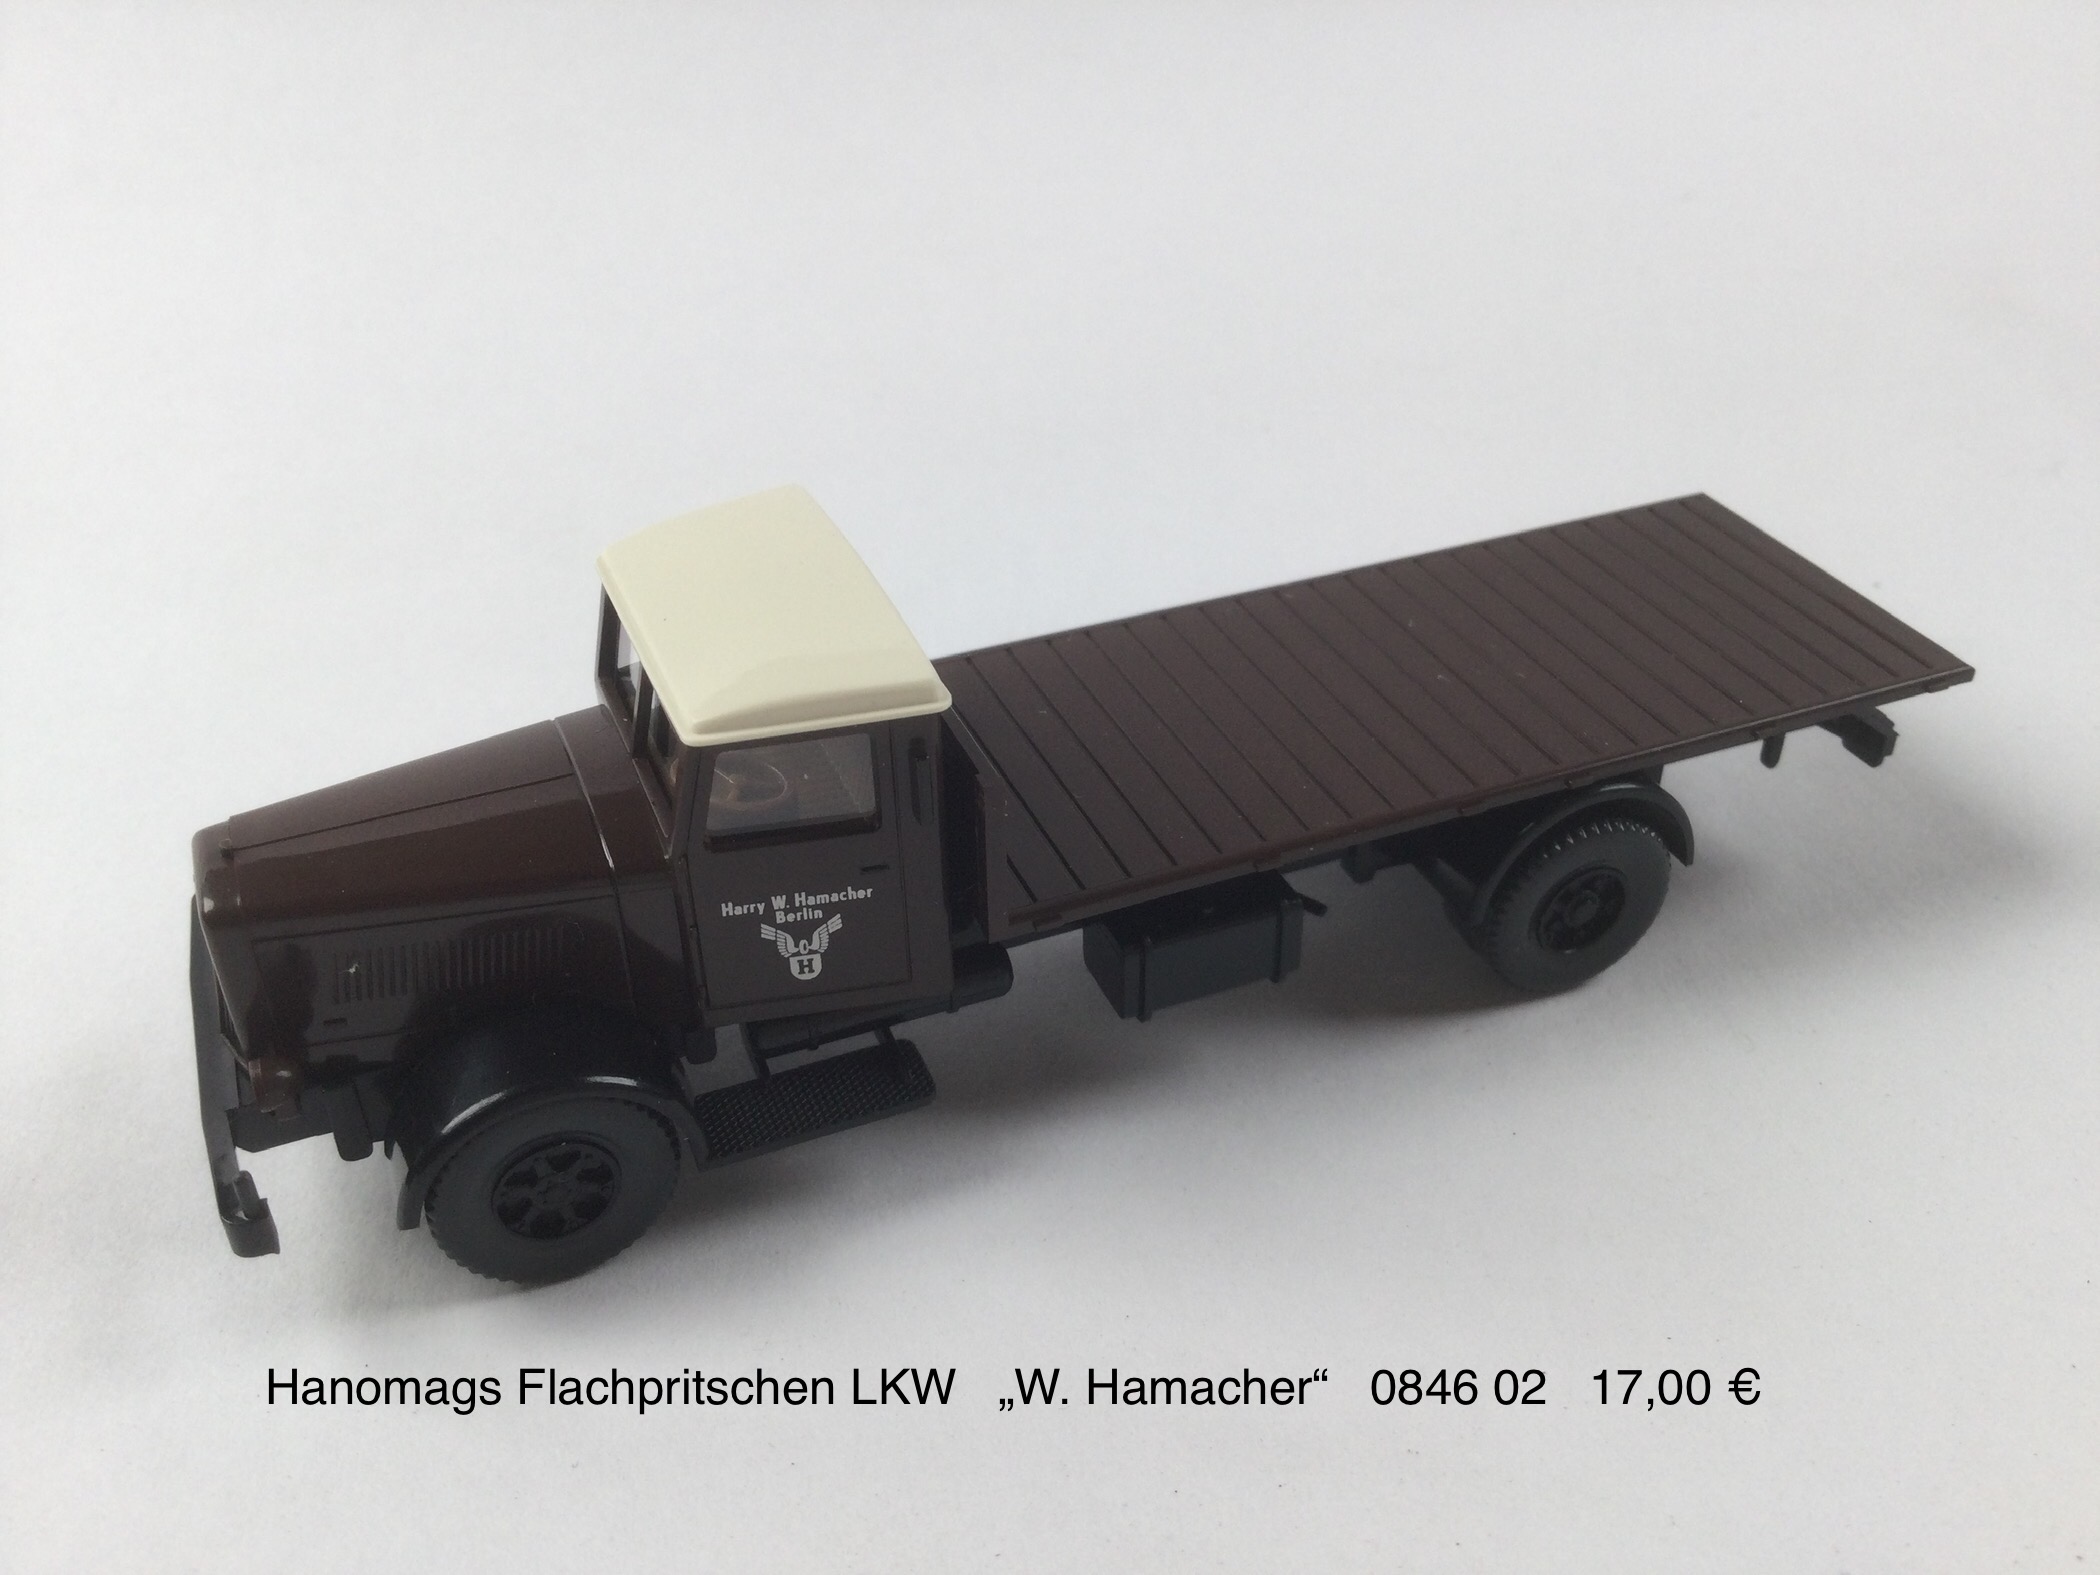 Hanomags Flachpritschen Lkw  "W.Hamacher"